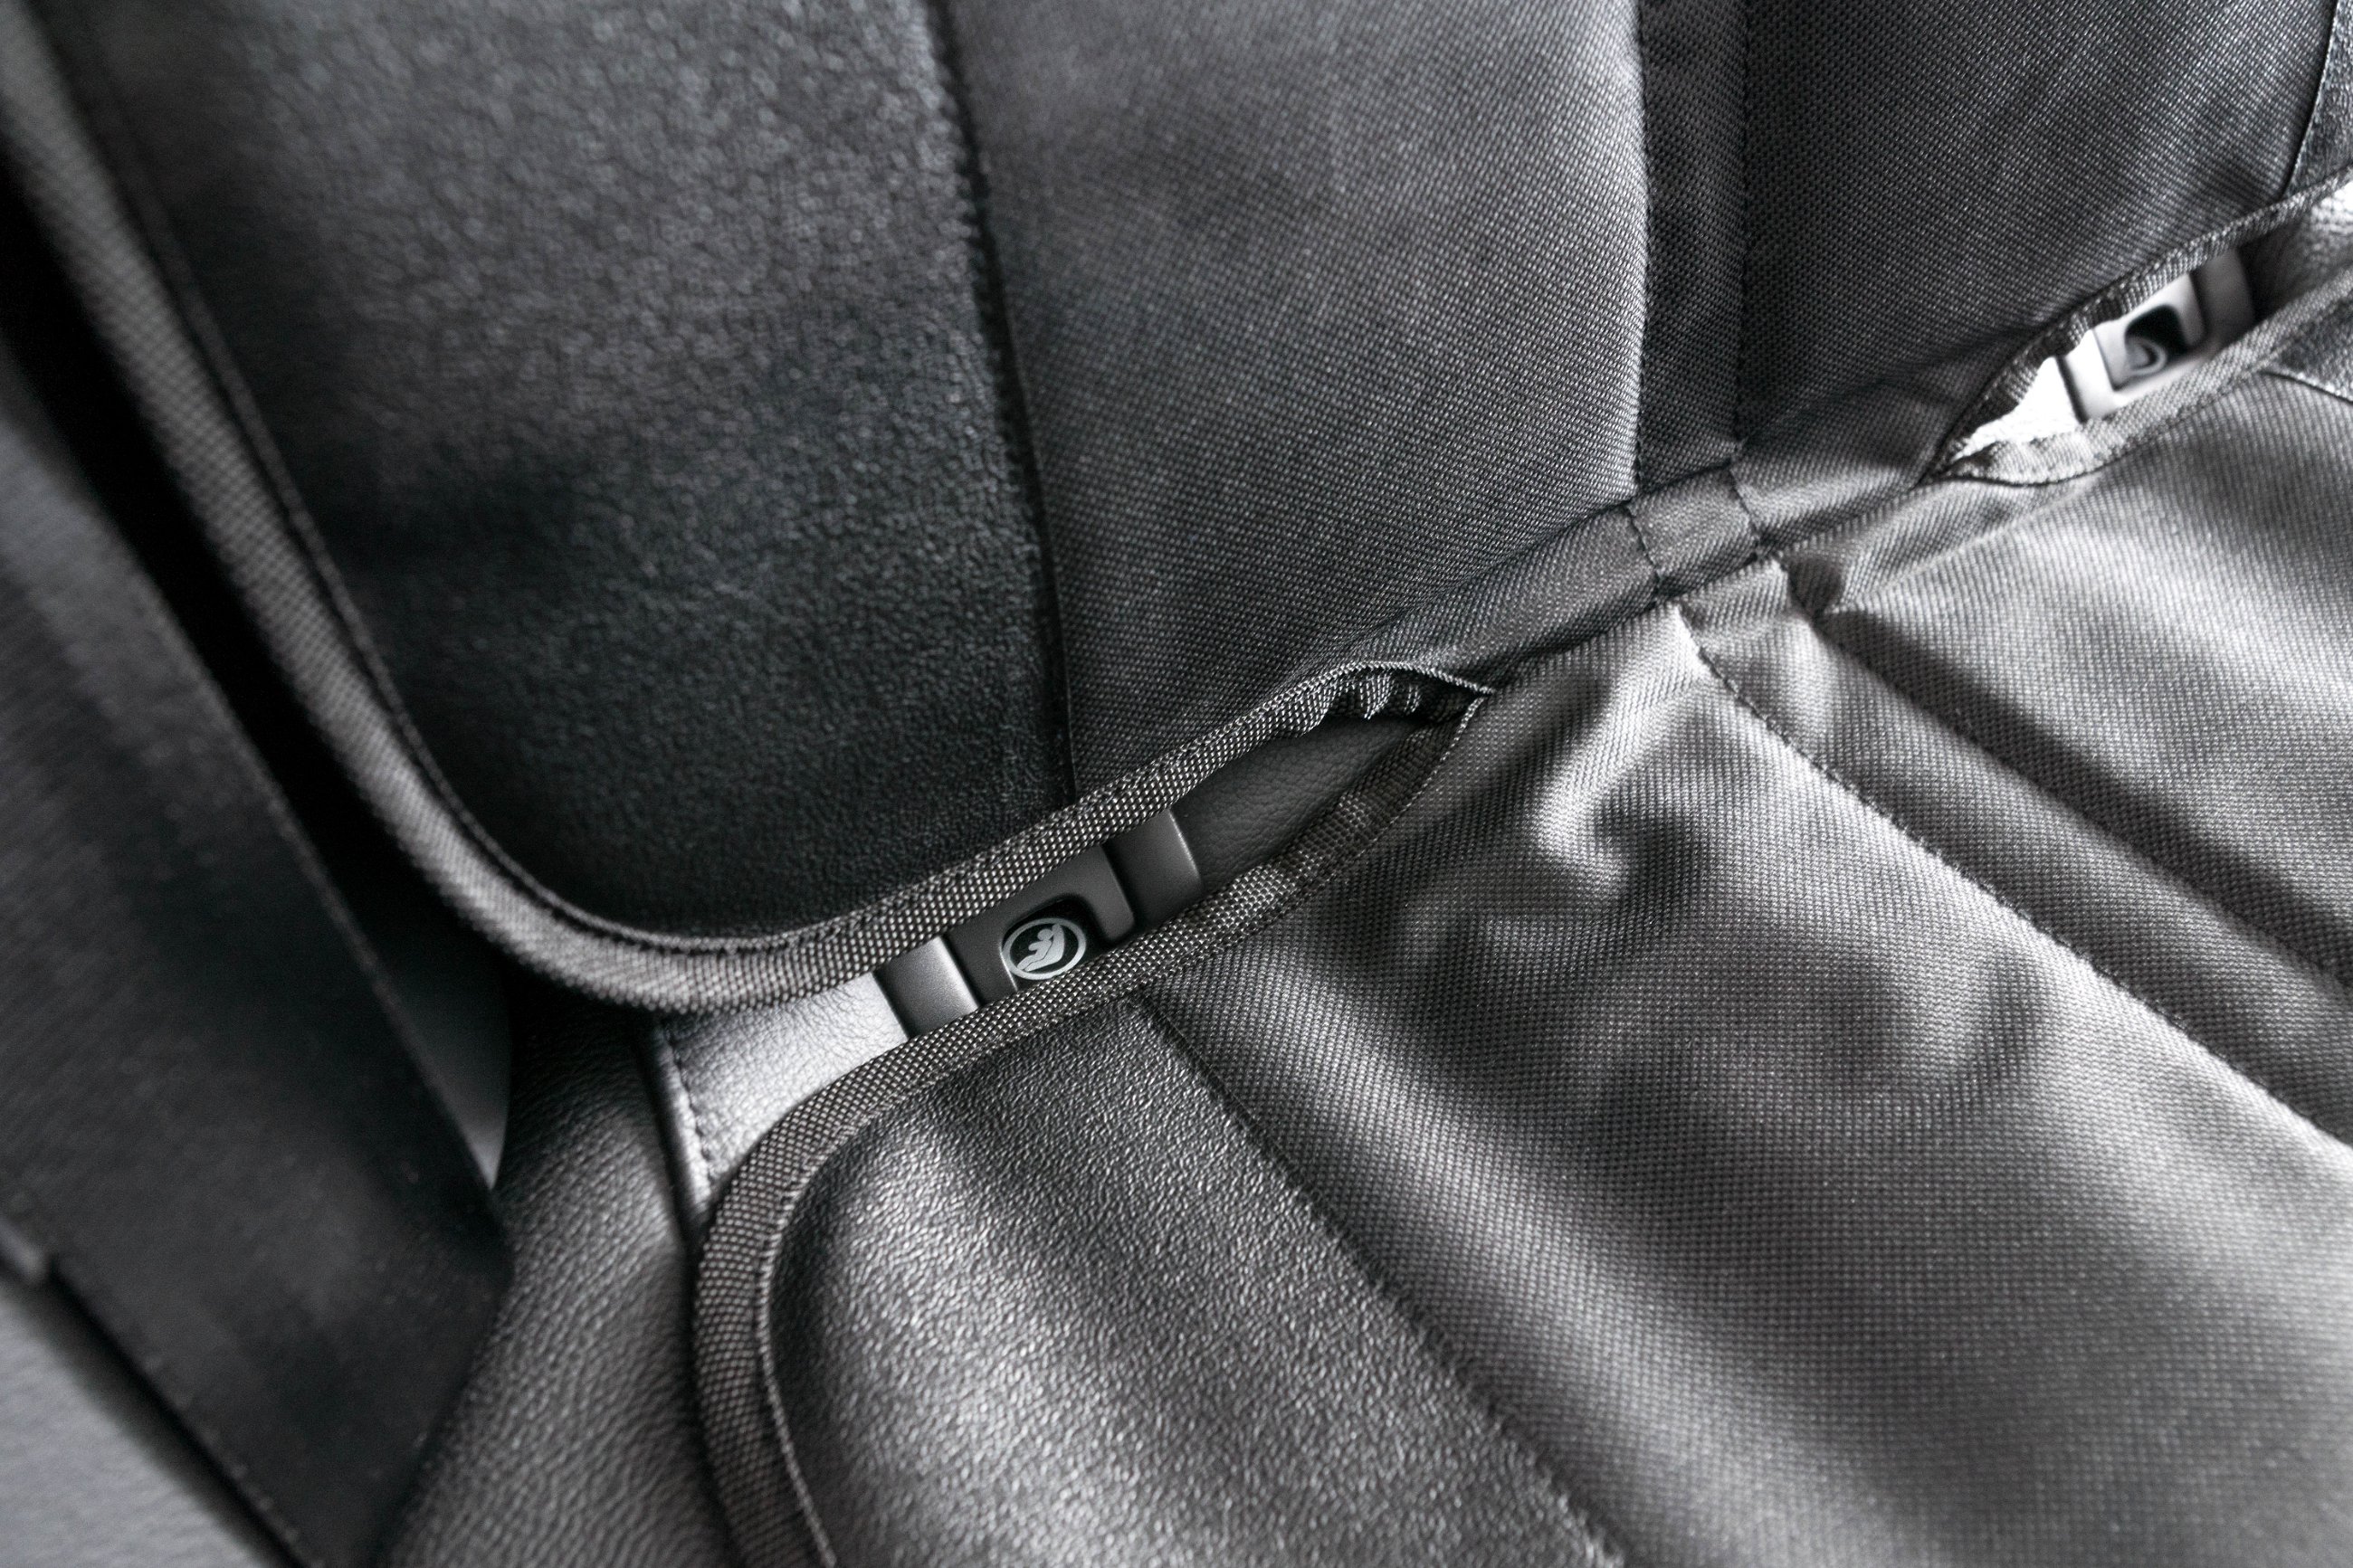 Protezioni copriseggiolino per sedile posteriore George Premium